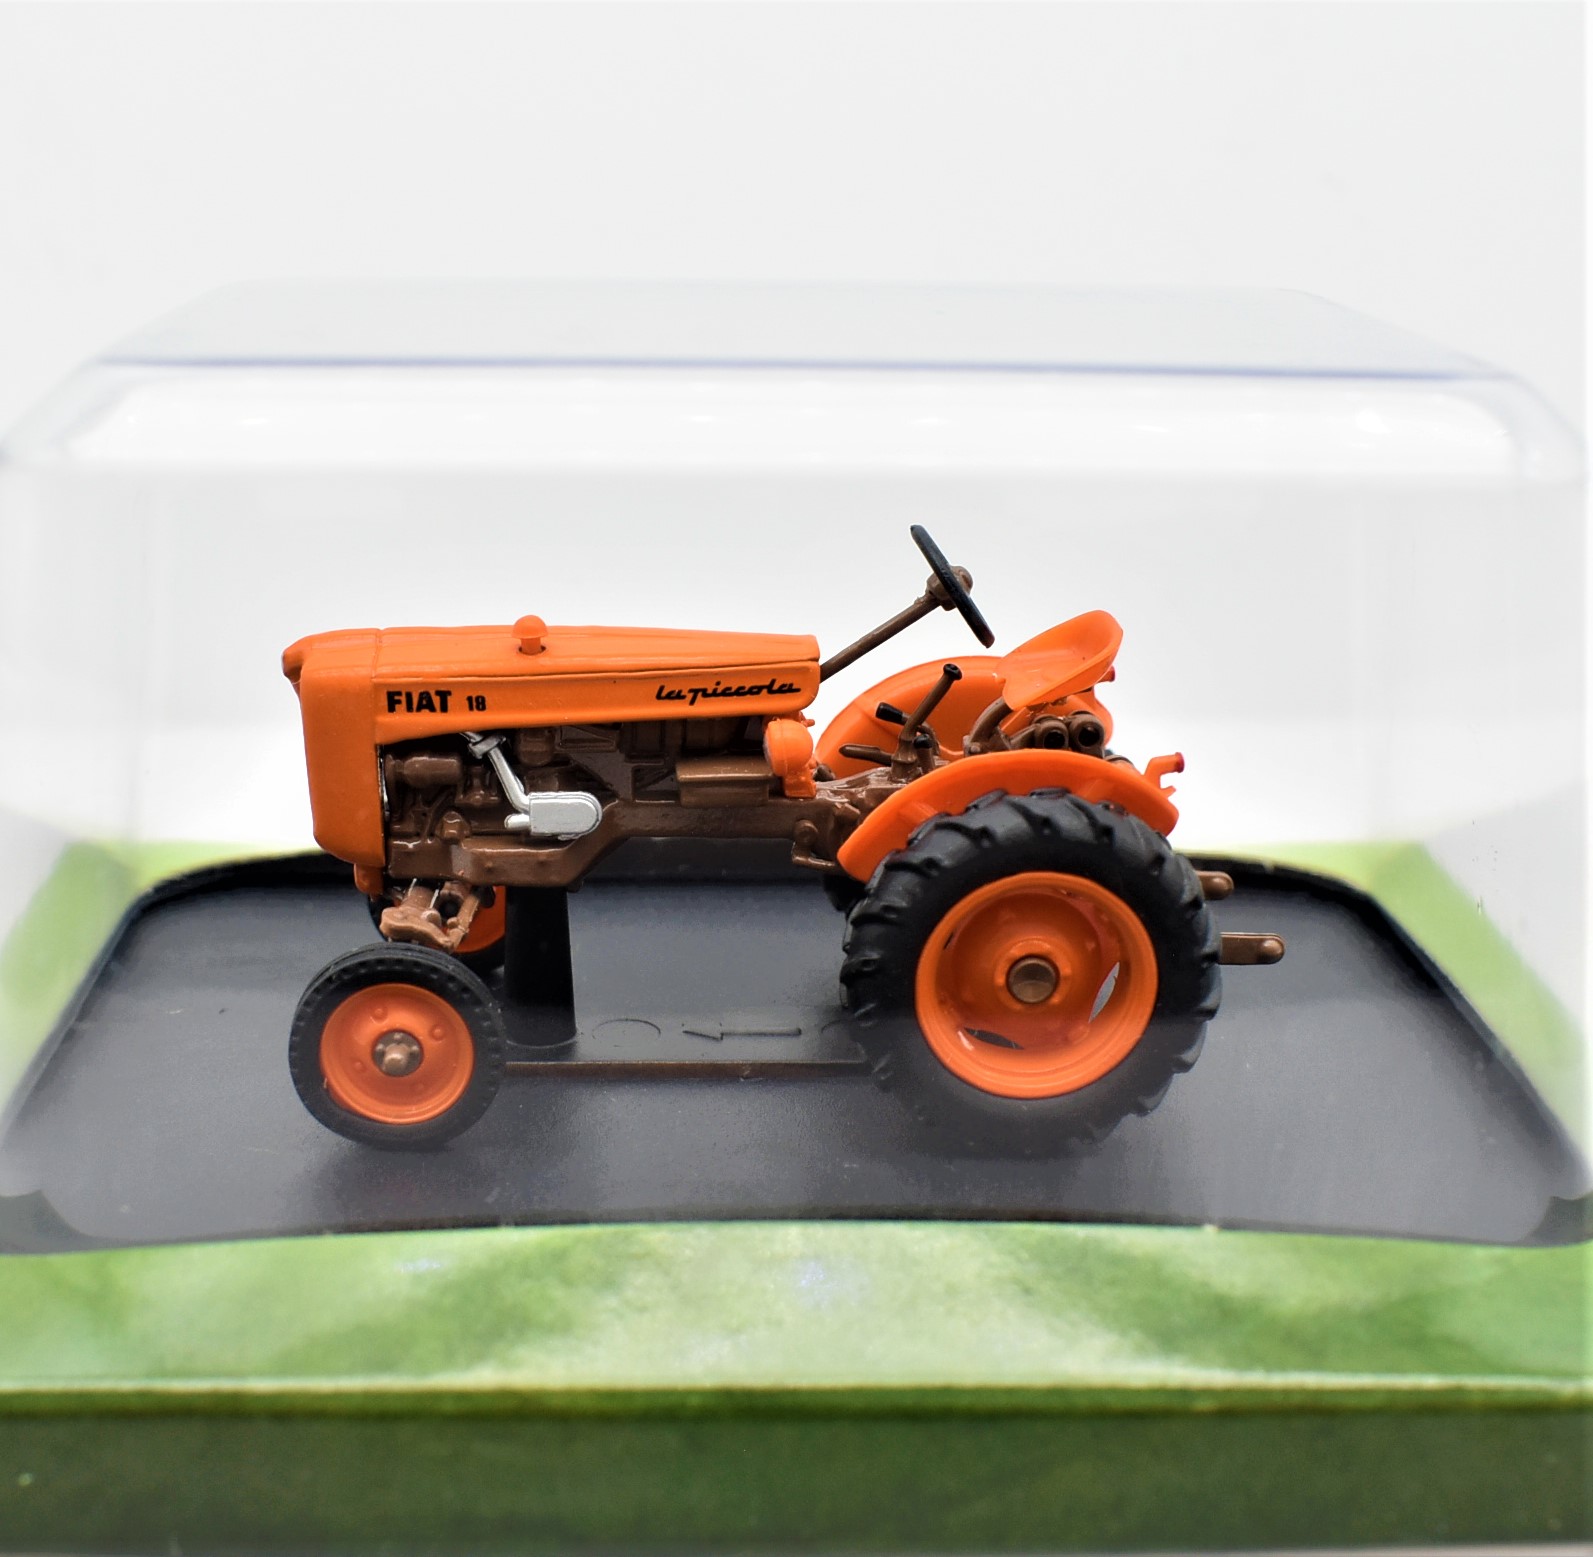 Modellini in scala di trattori agricoli e mezzi industriali - DVF